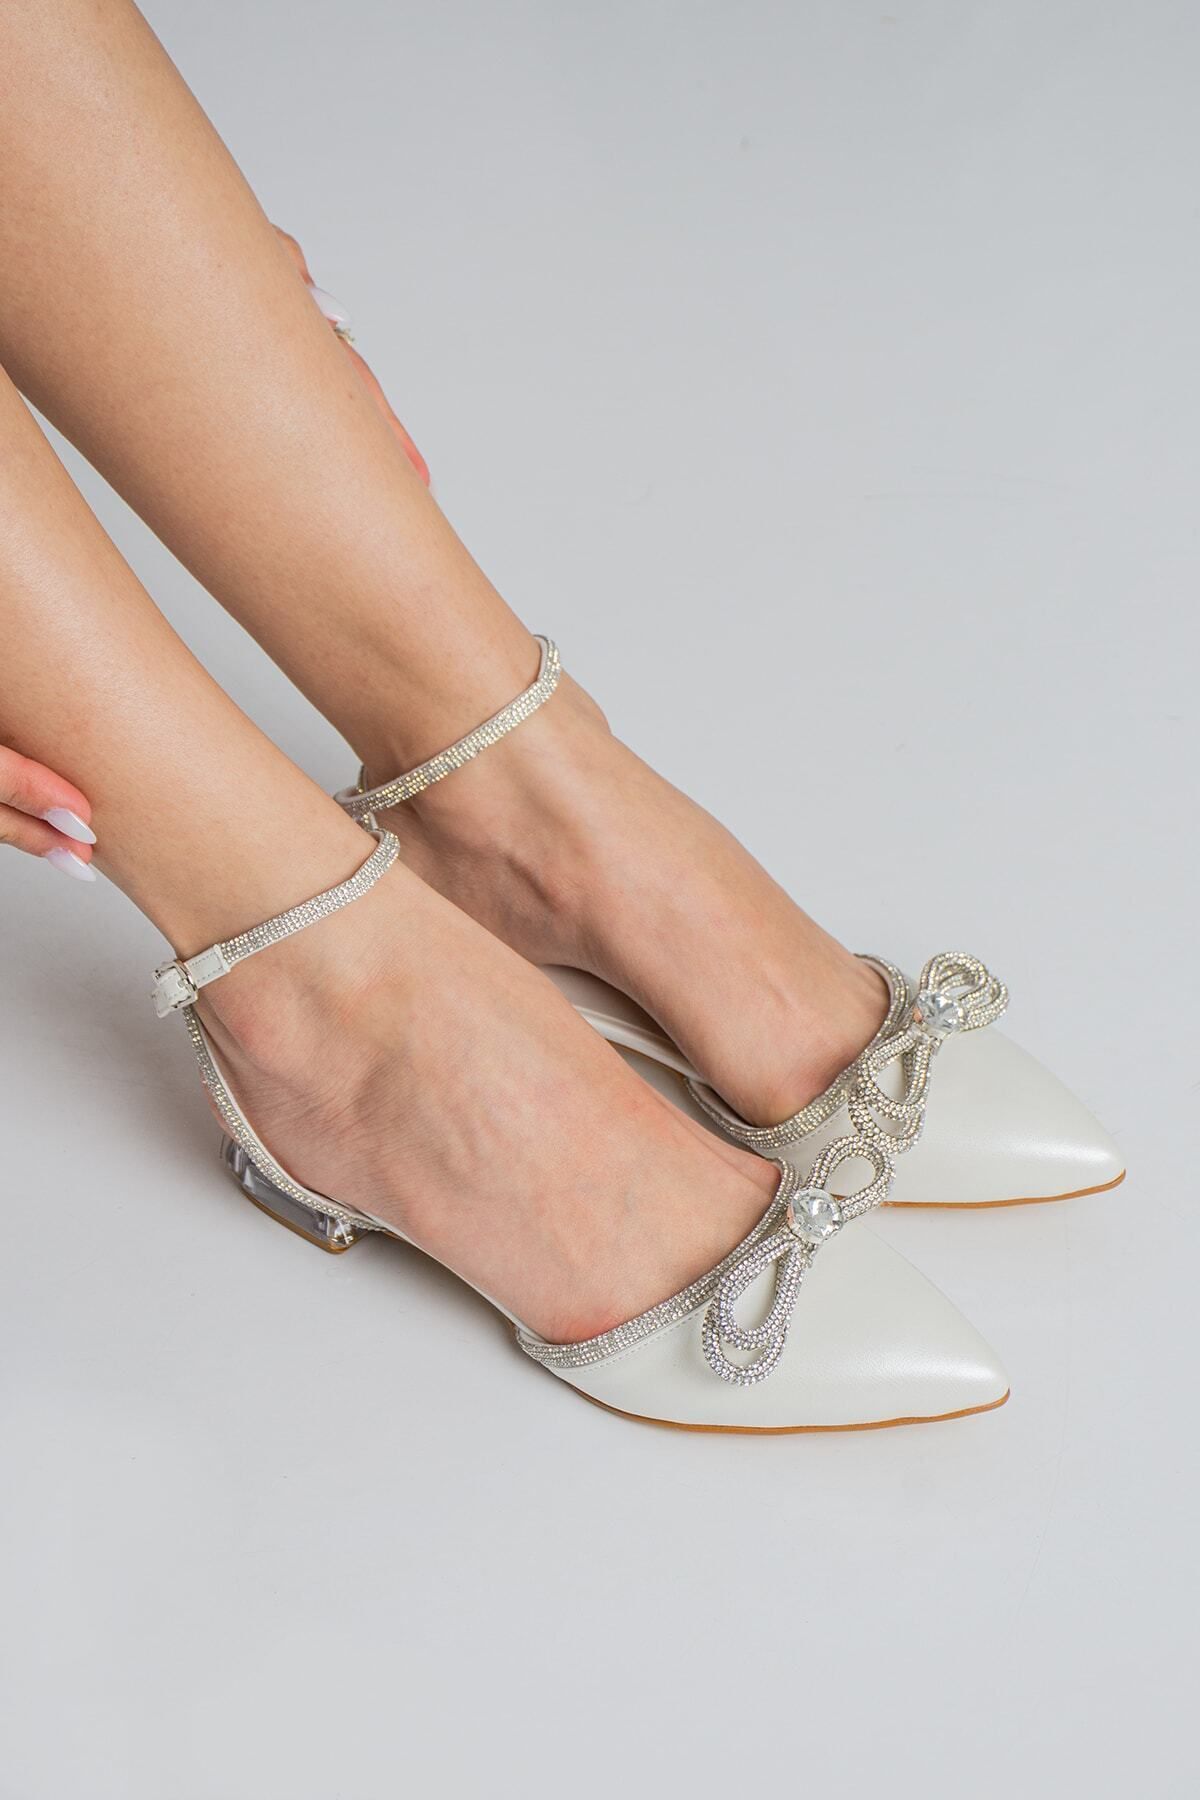 Almera's Shoes Sedef Cilt Taşlı 2,5 cm Topuklu Abiye Ayakkabı